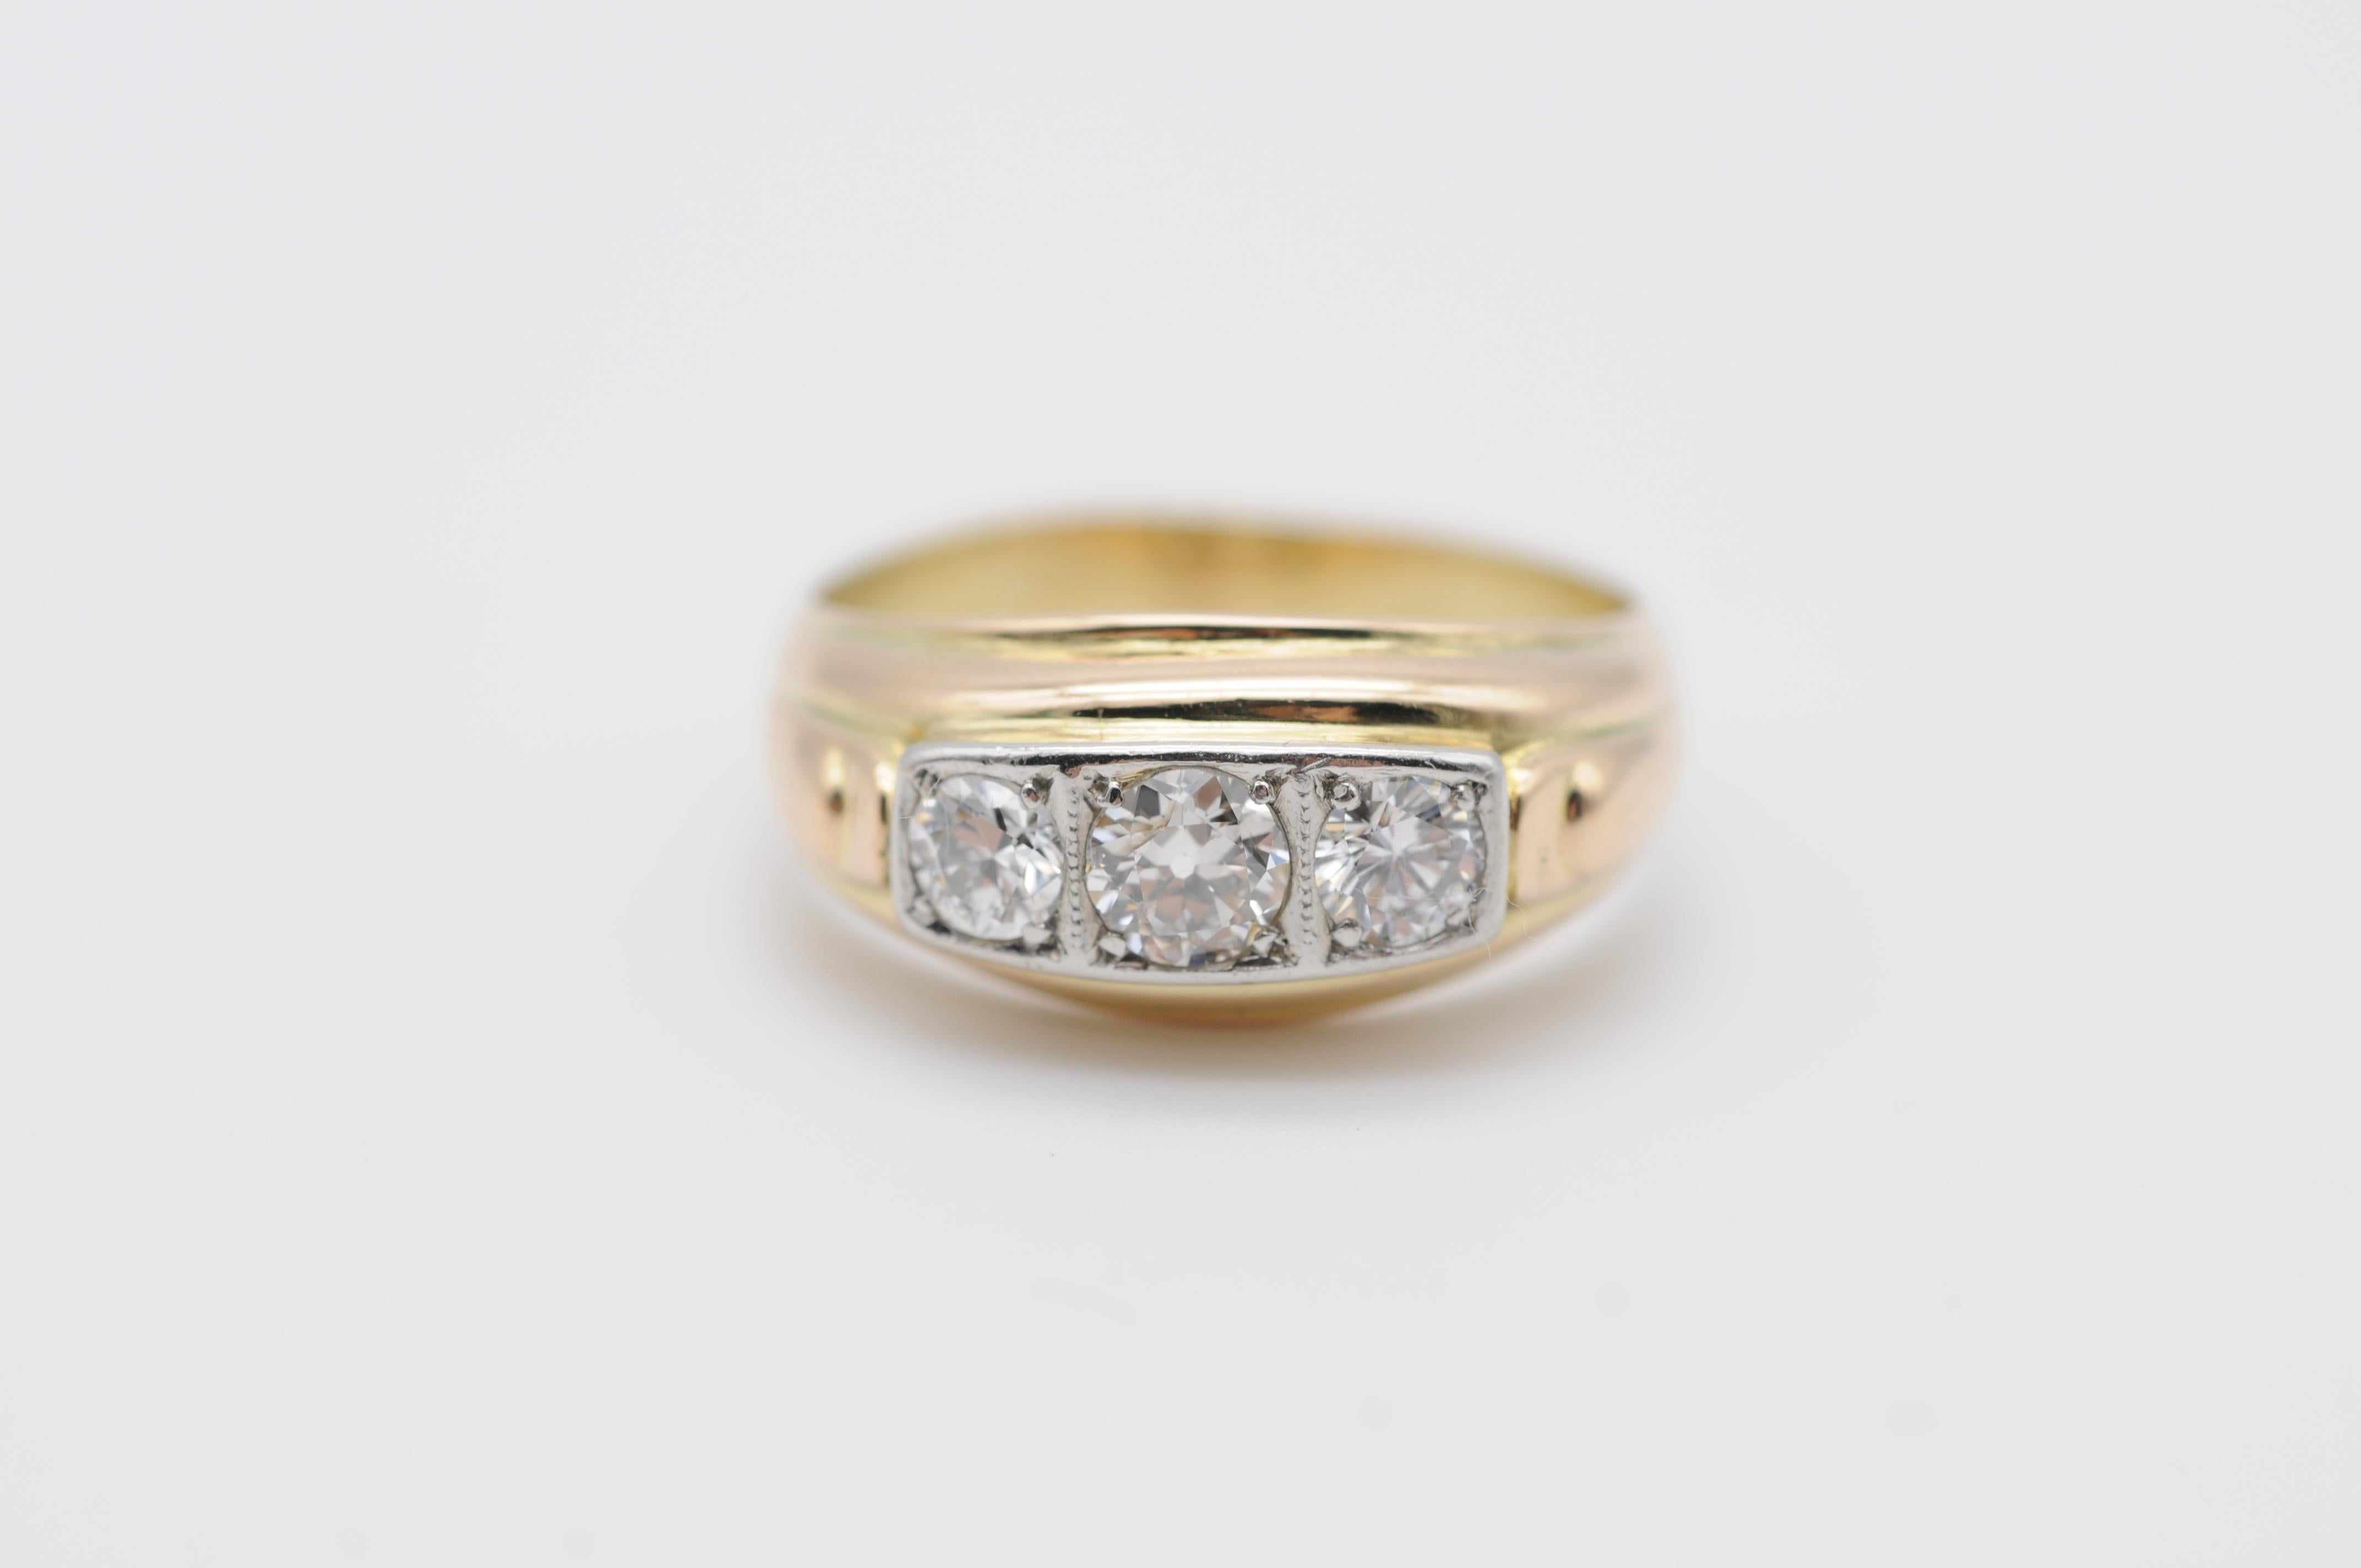 Genießen Sie die luxuriöse Schönheit dieses klassischen Diamantrings, der sorgfältig aus 14 Karat Gelbgold gefertigt wurde. Mit seinen drei atemberaubenden Diamanten mit einem Gesamtkaratgewicht von ca. 0,70 Karat strahlt dieser Ring Eleganz und